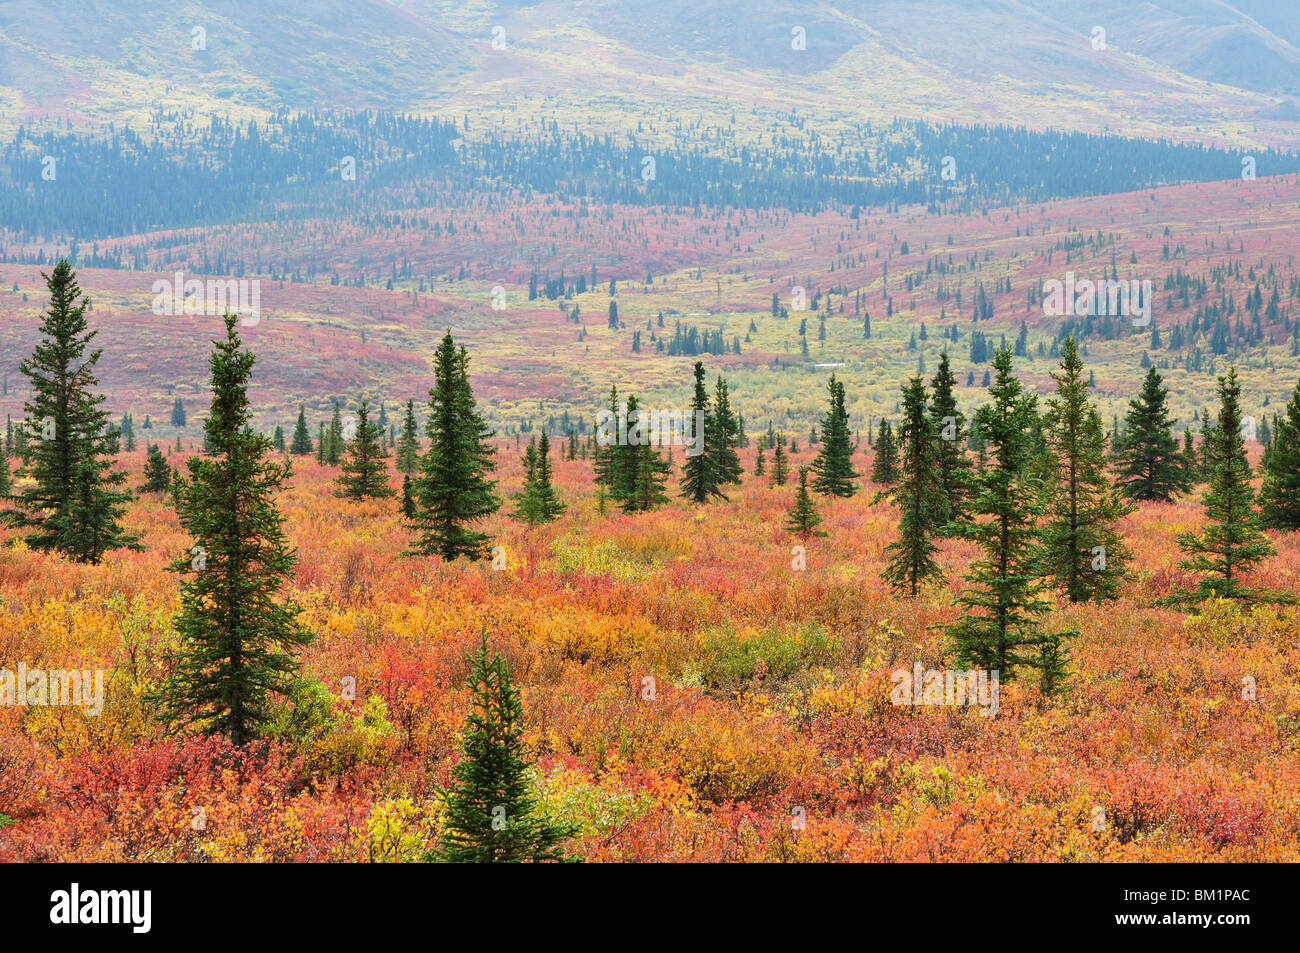 La toundra dans les couleurs de l'automne, le Parc National Denali et préserver, Alaska, États-Unis d'Amérique, Amérique du Nord Banque D'Images